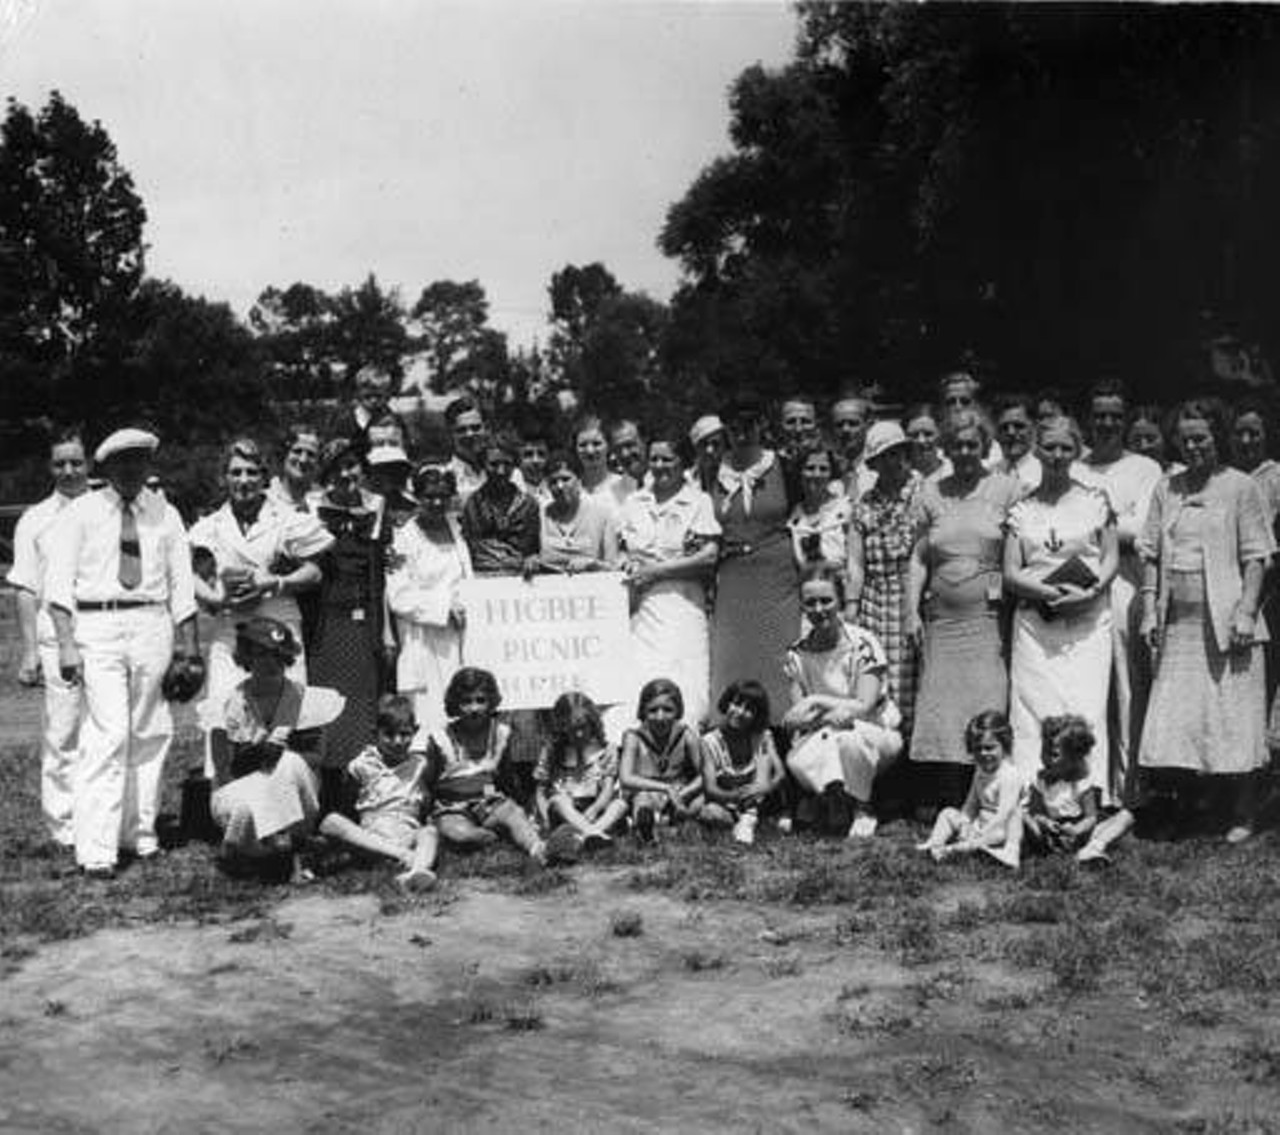 Higbee Company Employees' Picnic, Wildwood Park. 1934